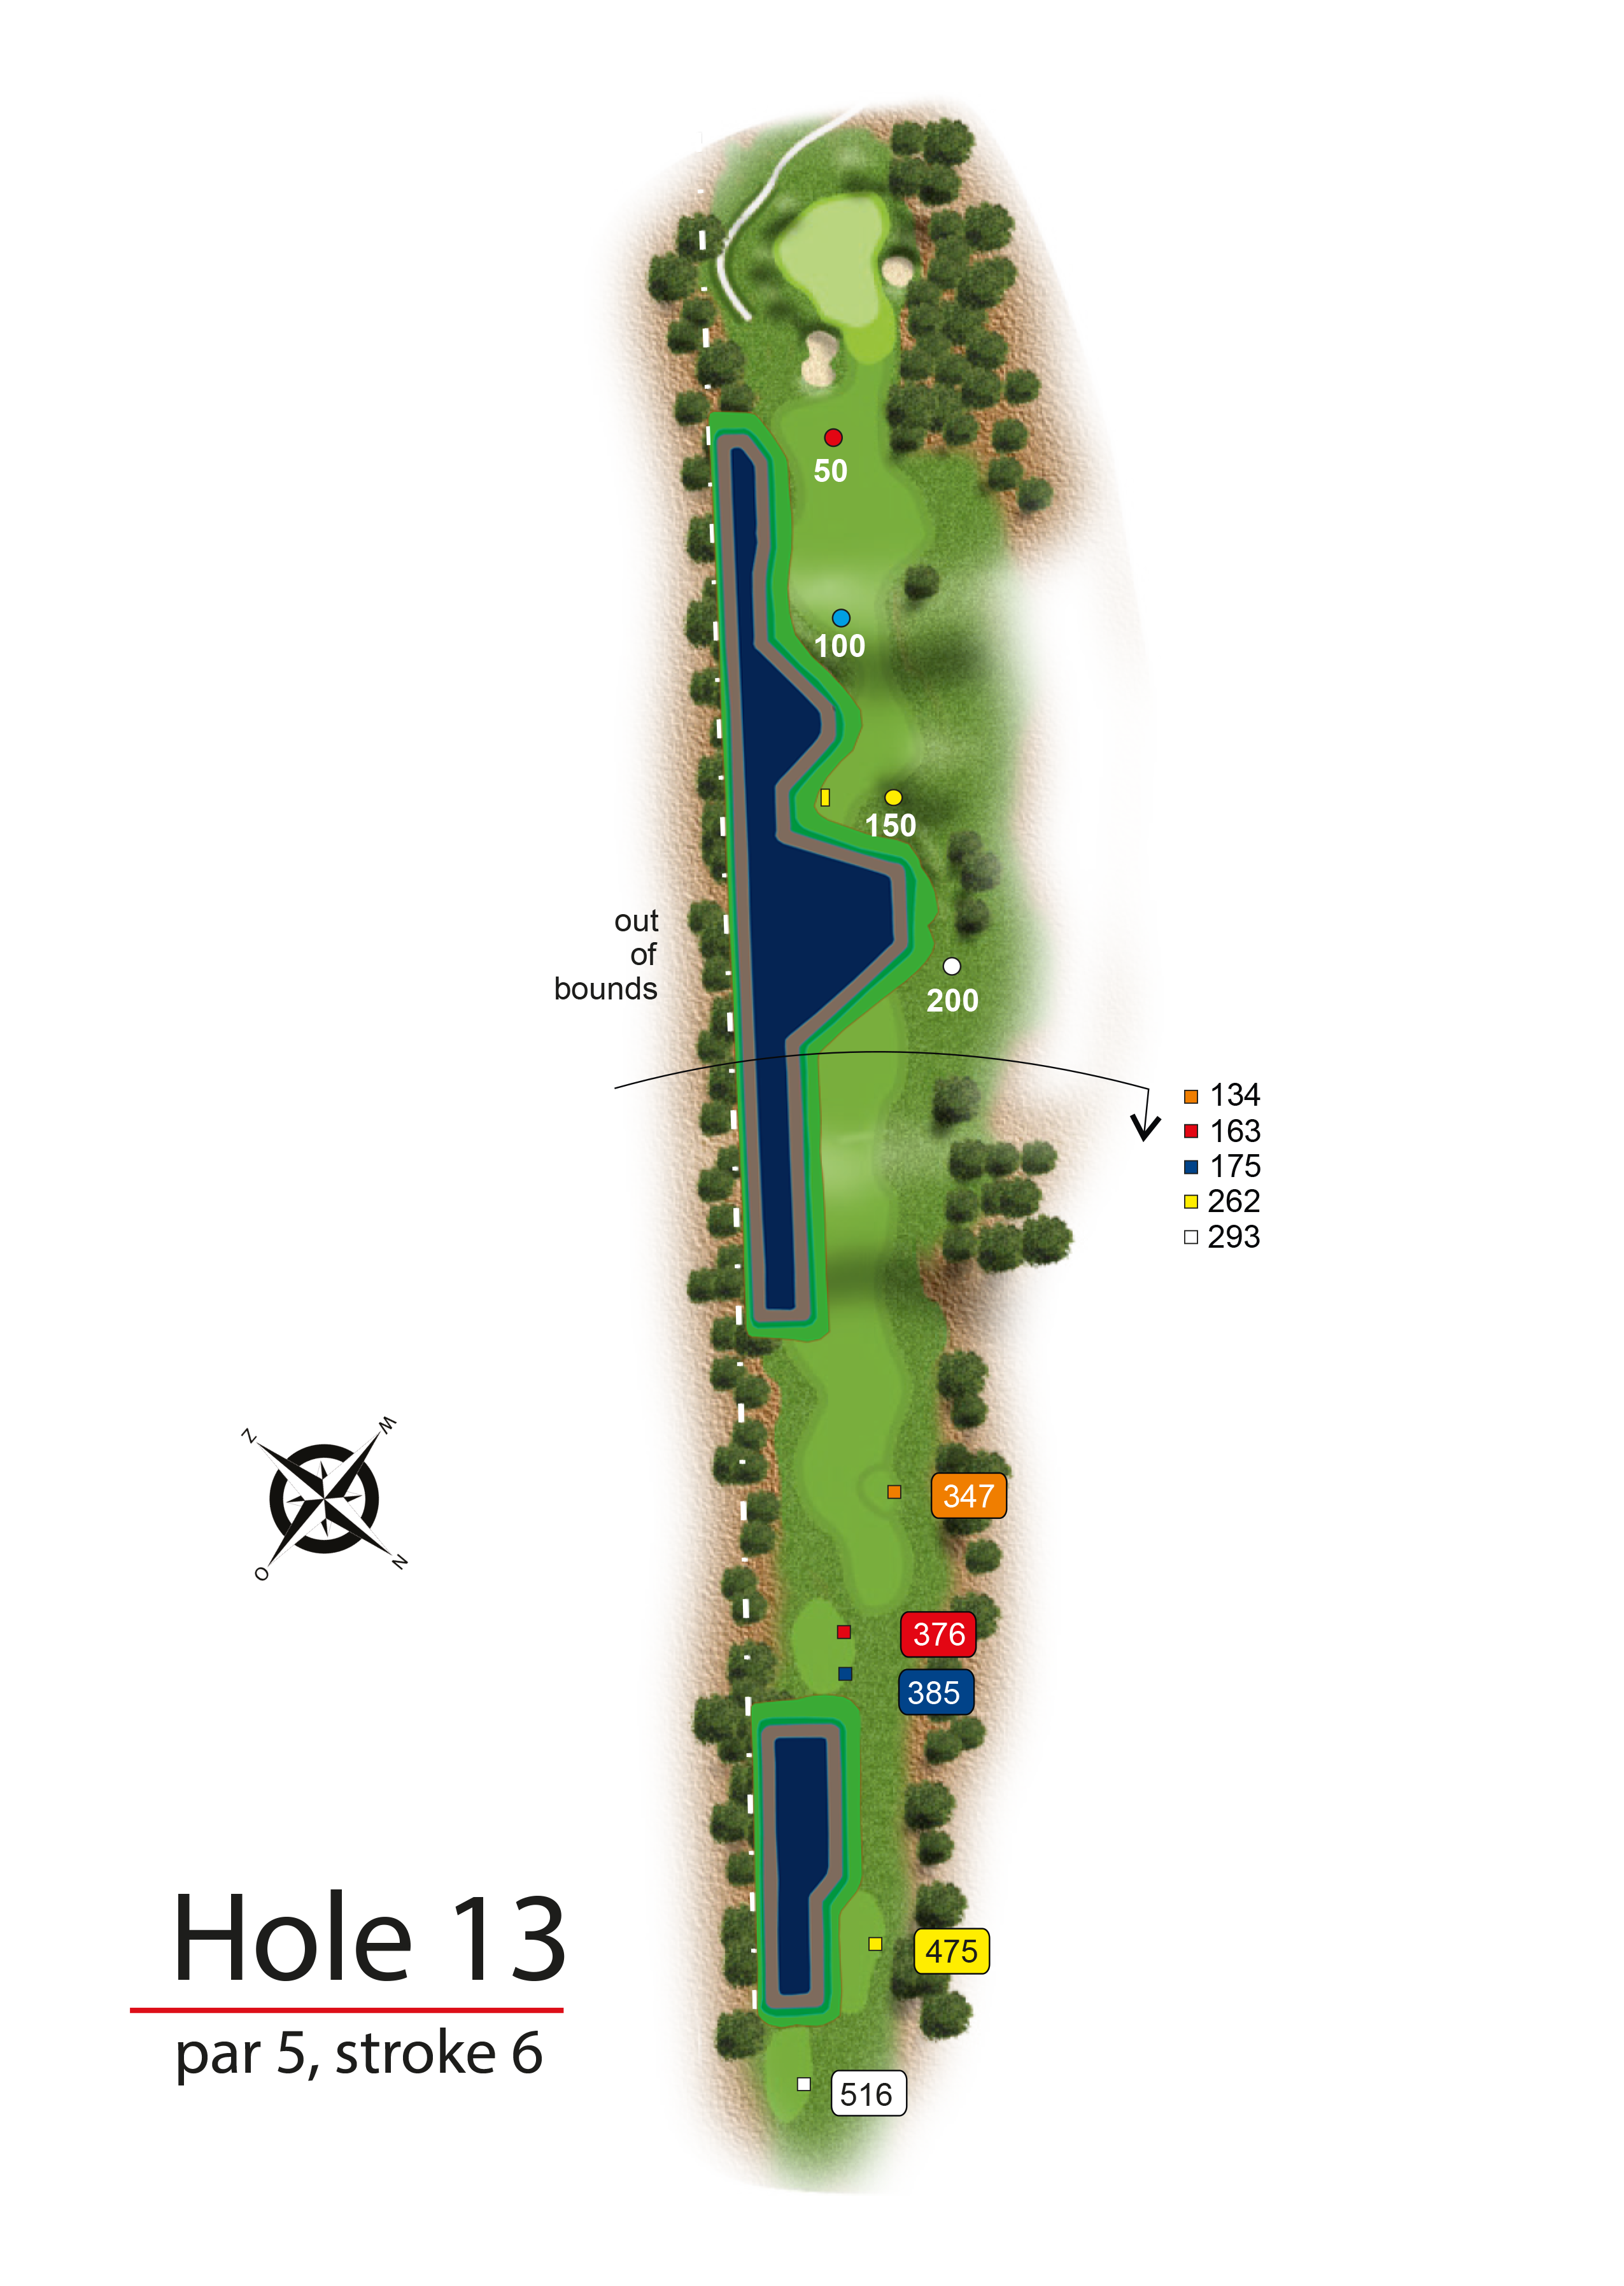 Hole 13 - simple